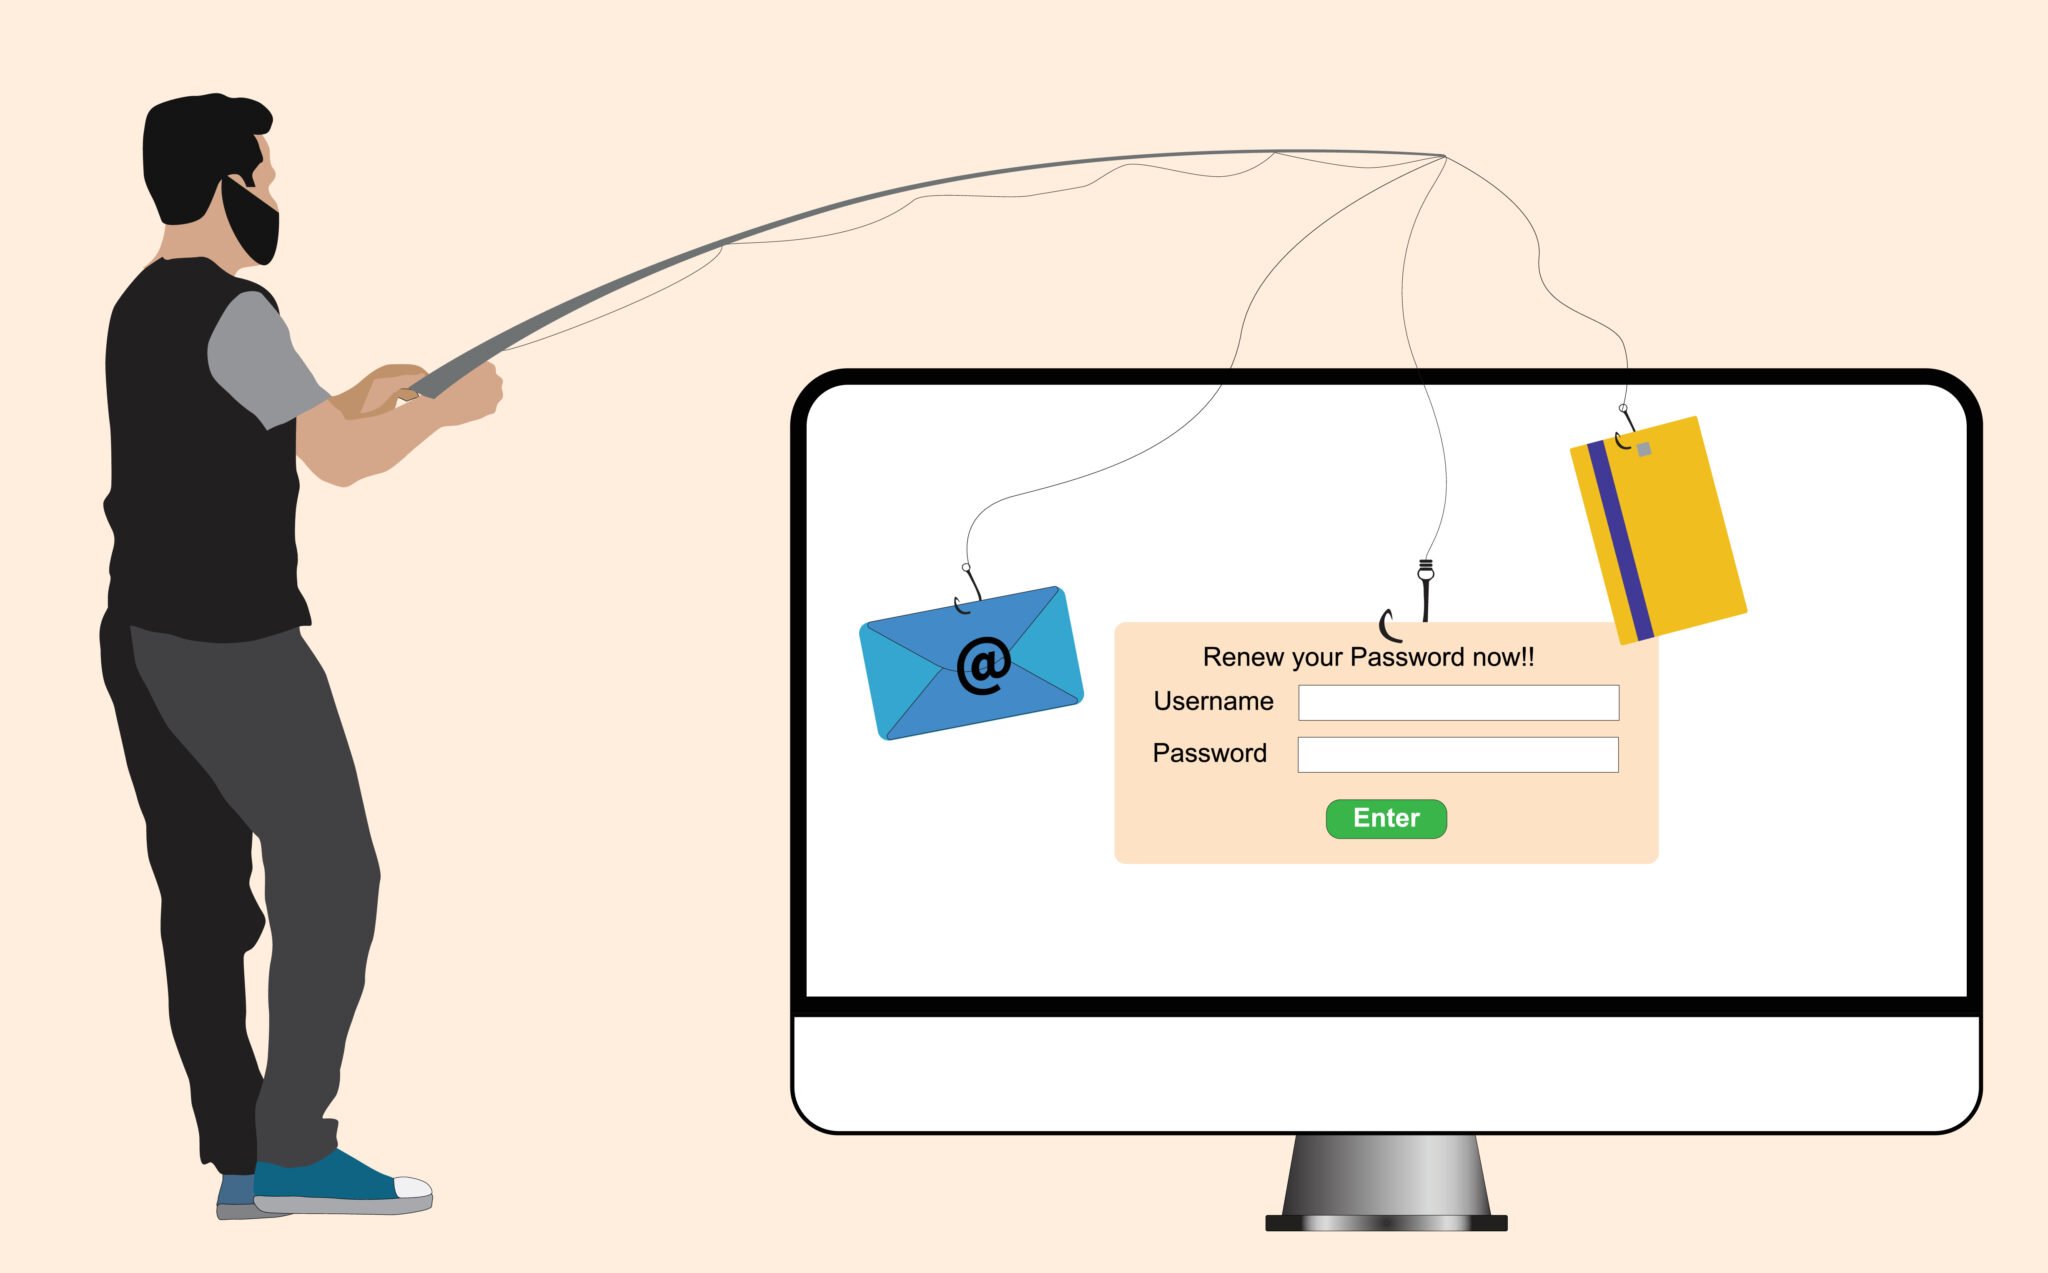 Comment réaliser un test de sécurité efficace contre le phishing ?